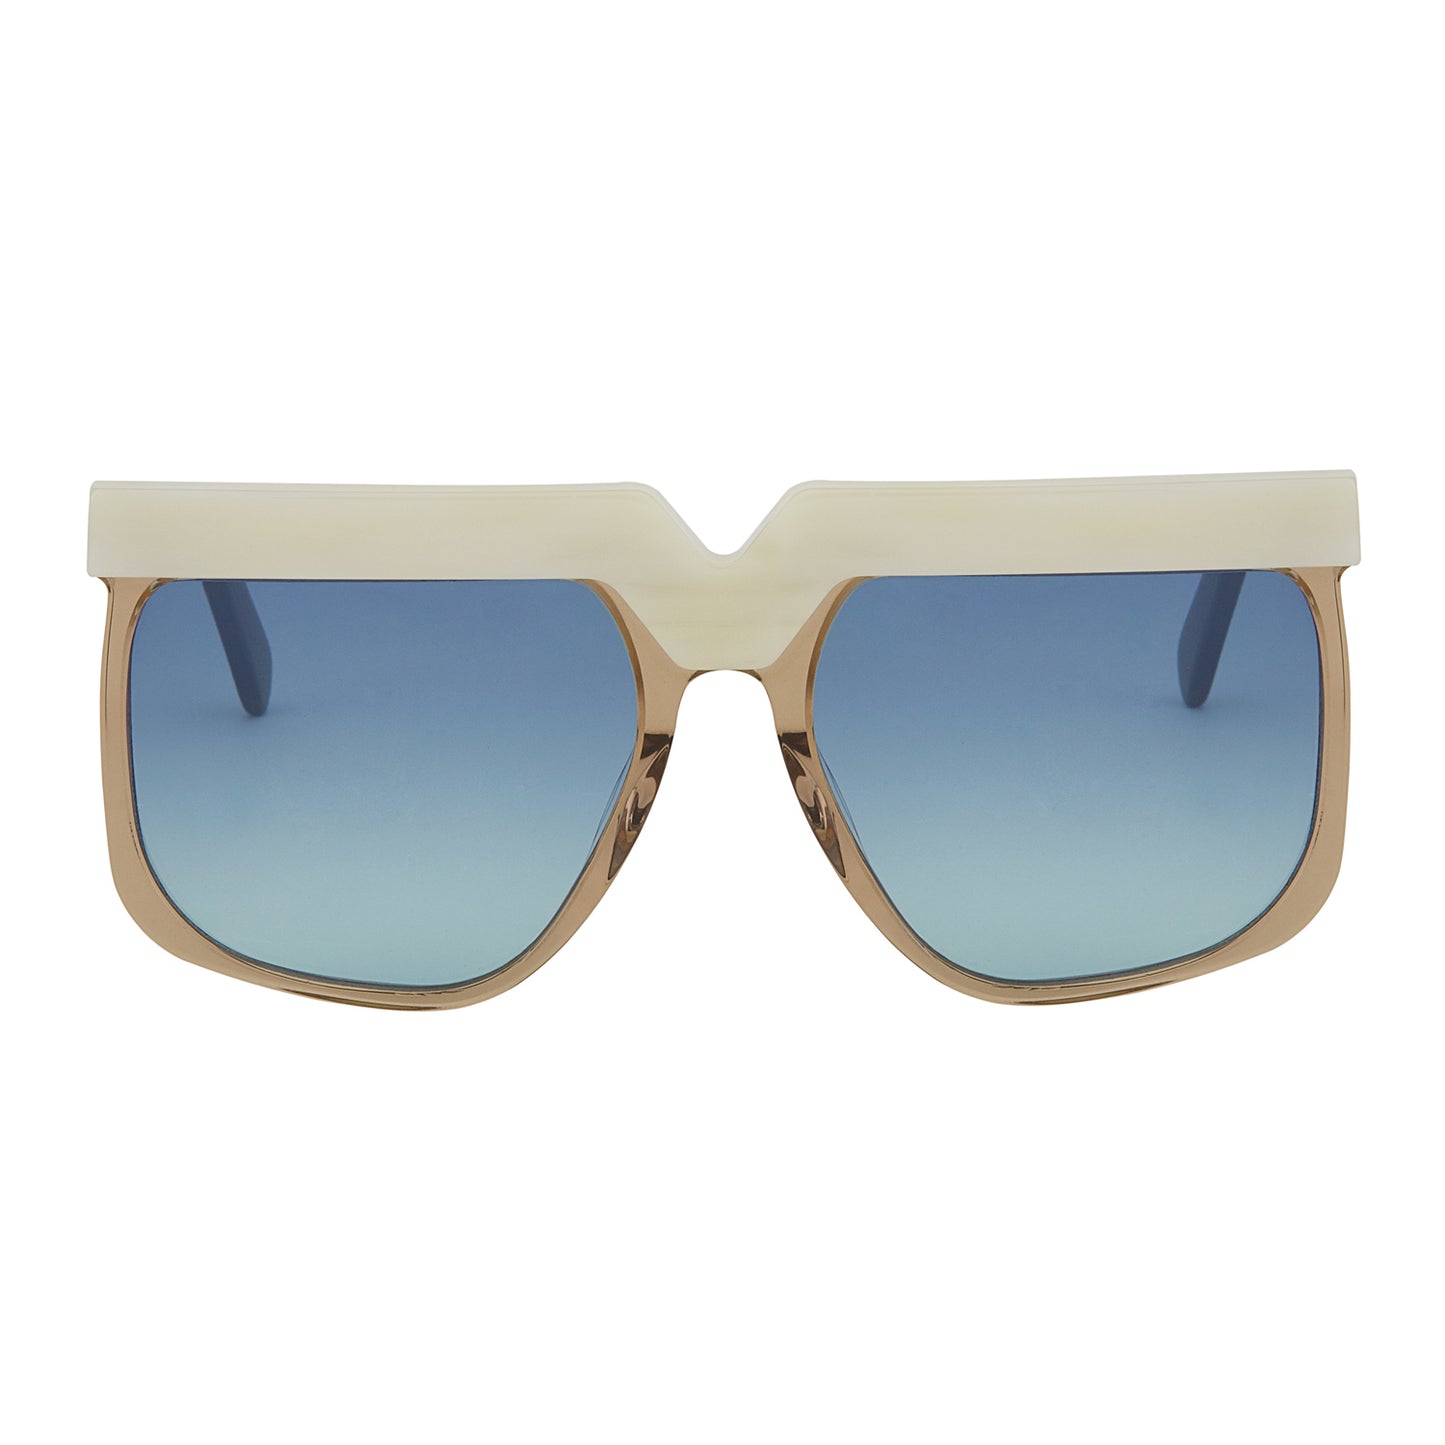 Mokki Big Brows sunglasses in white